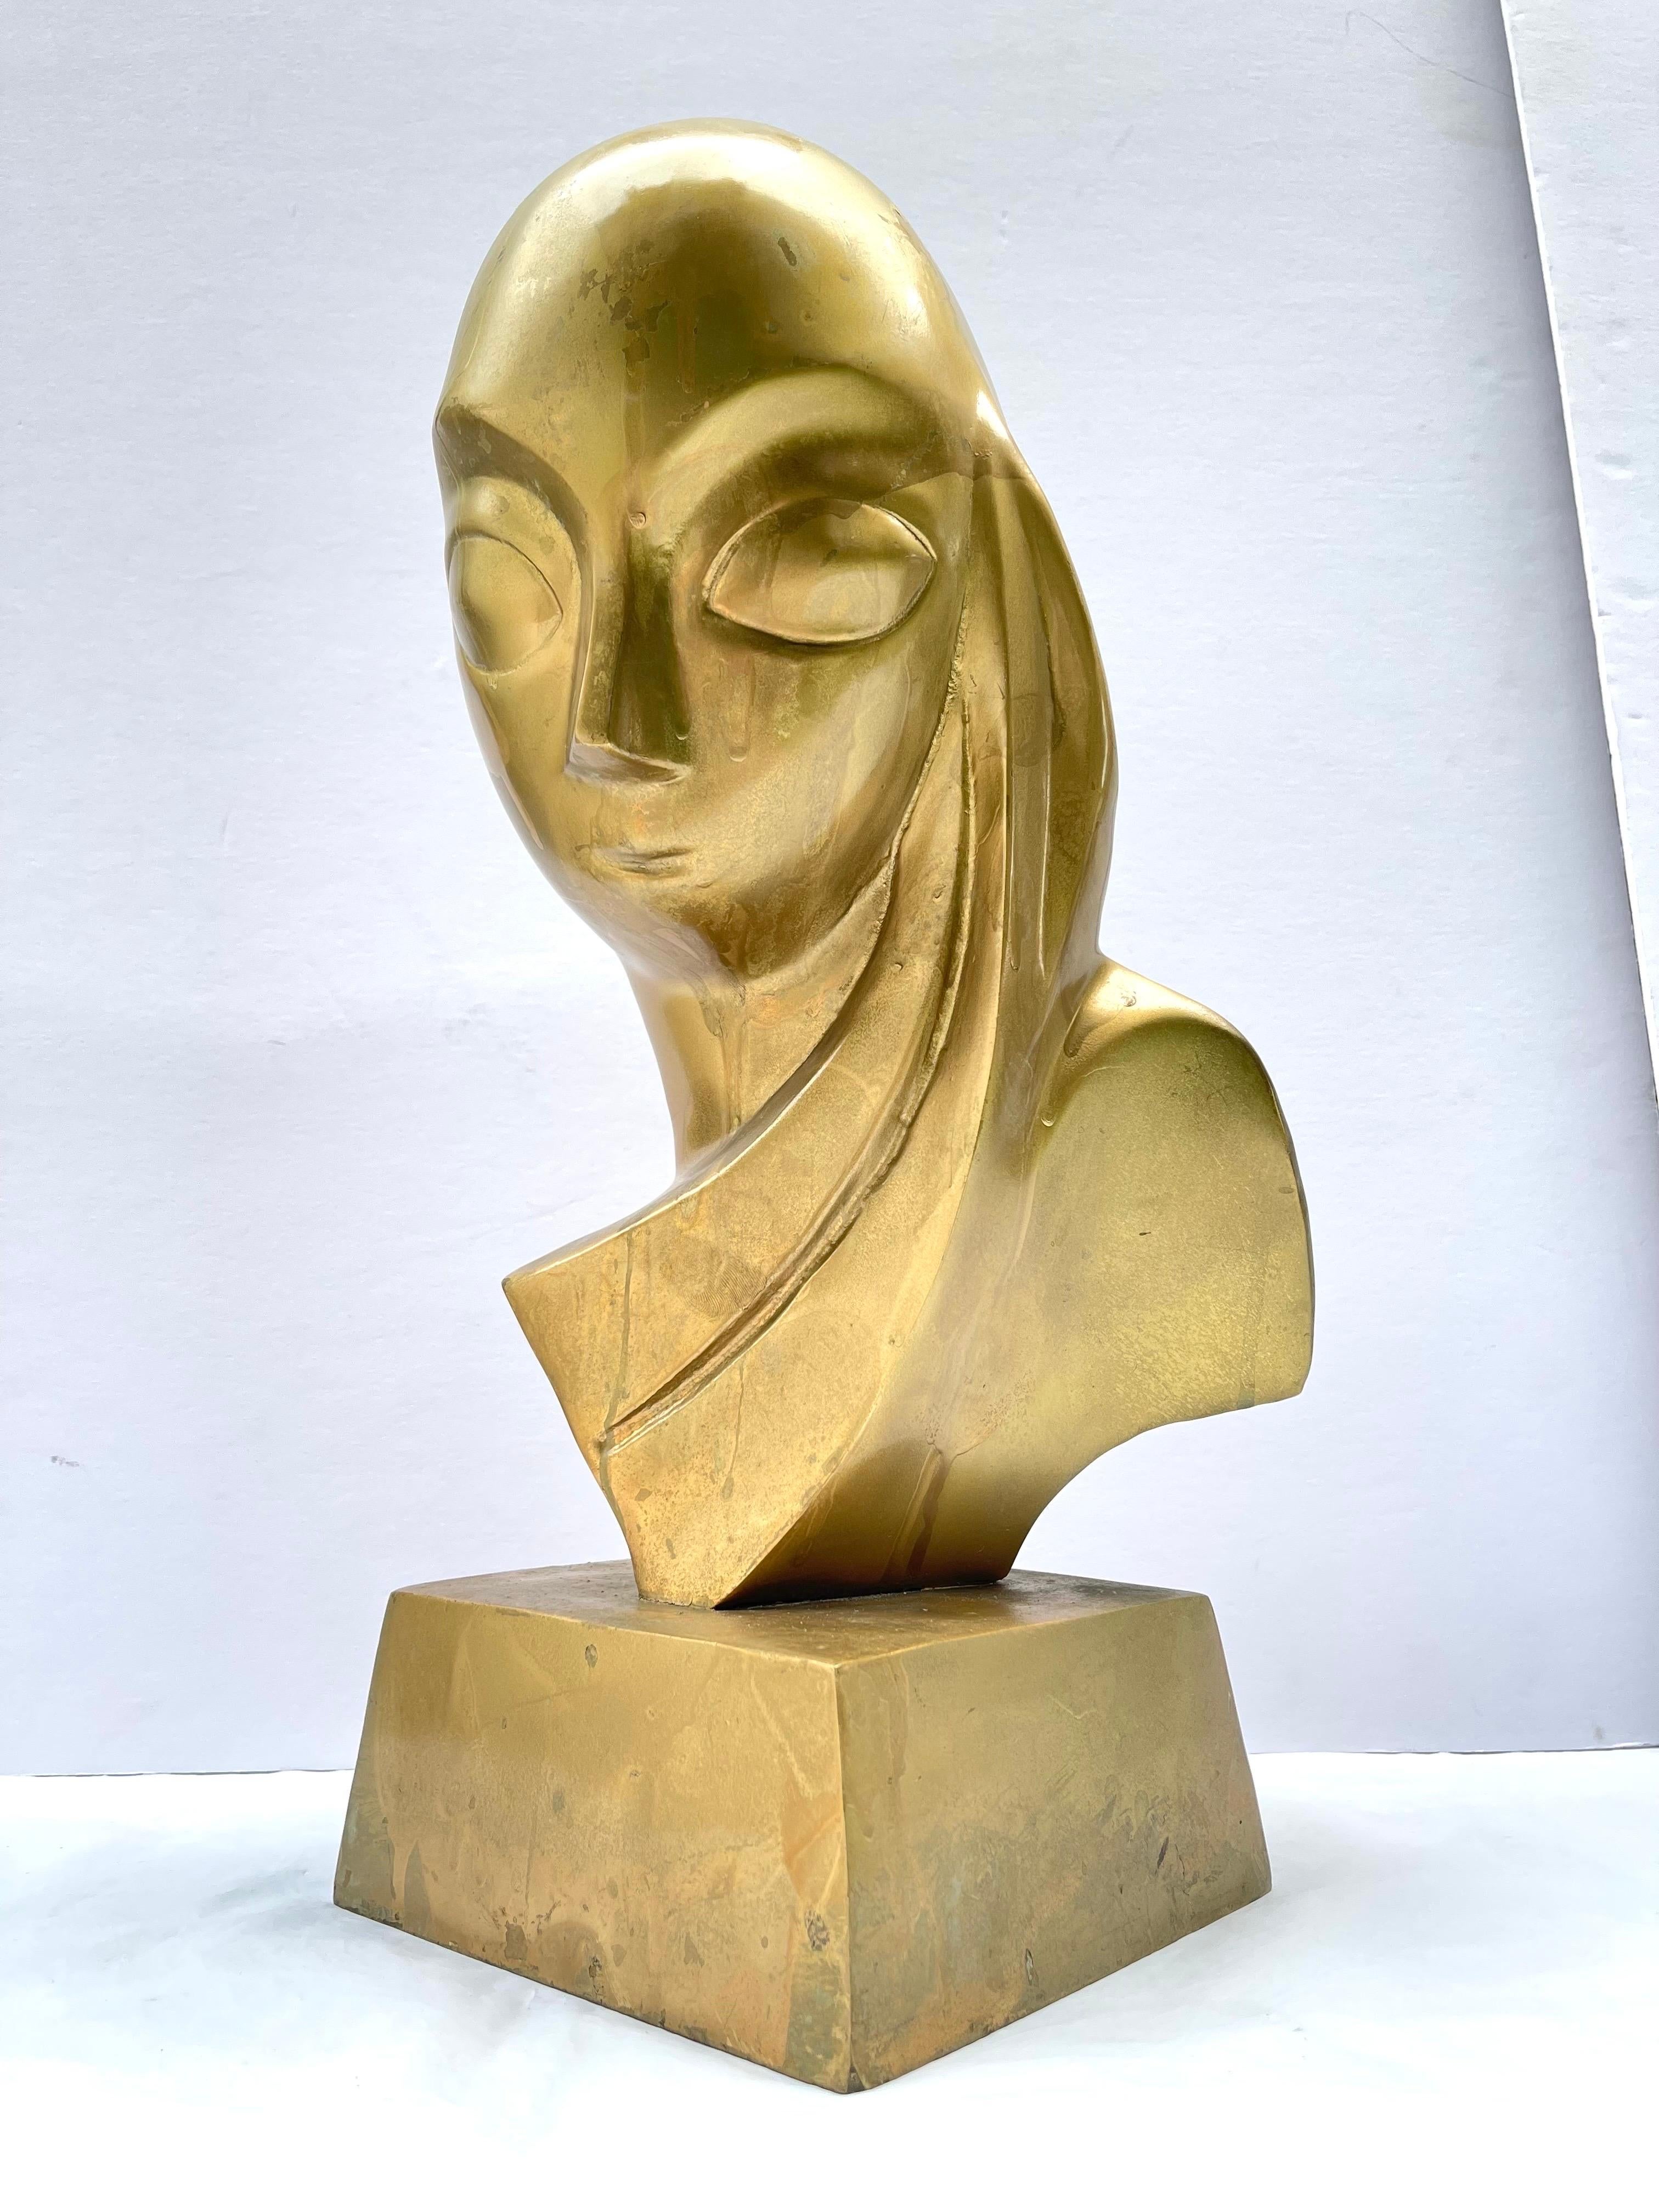 Modernistische Messingskulptur einer Frau im Stil von Brancusi. 
Wir glauben, dass es sich hierbei um eine Reproduktion im Stil des Originals von Brancusi im Museum of Modern Art in NYC handelt, etwa in den 1970er Jahren. 
Mlle Pogany ist ein